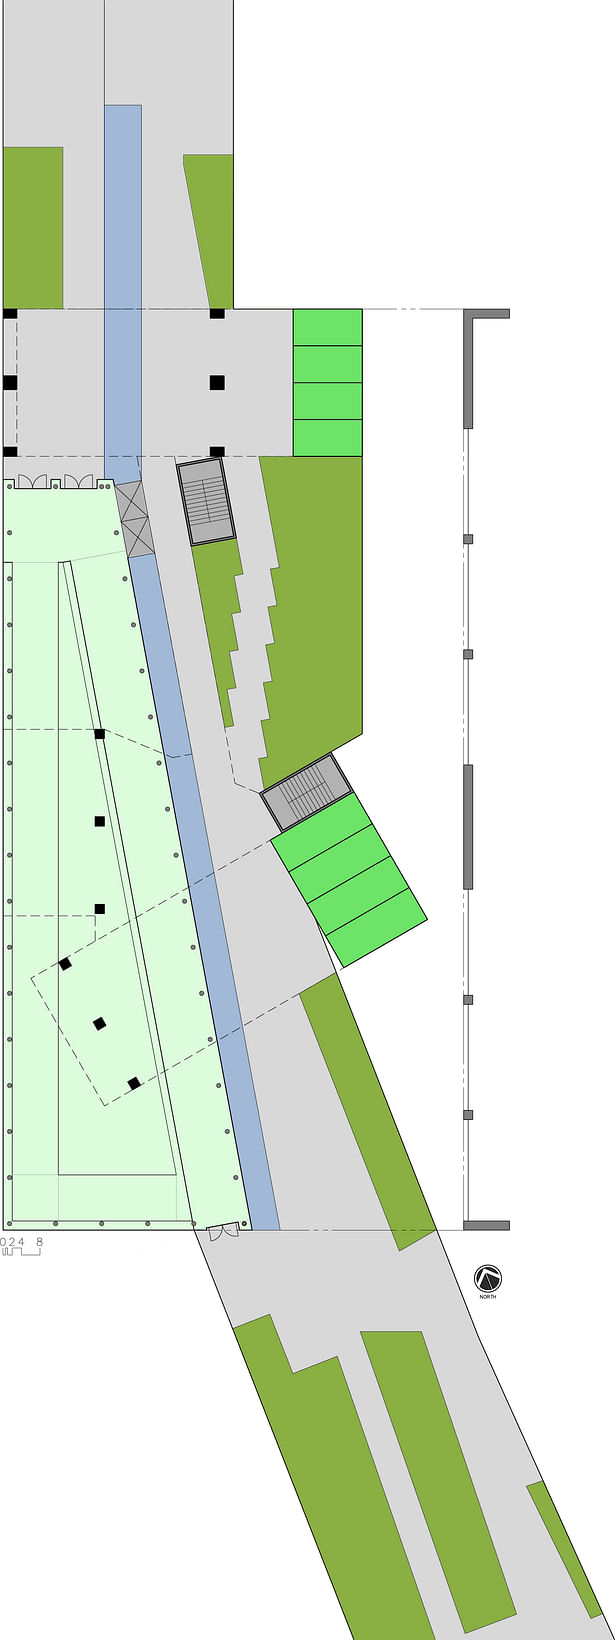 High Line floor plan